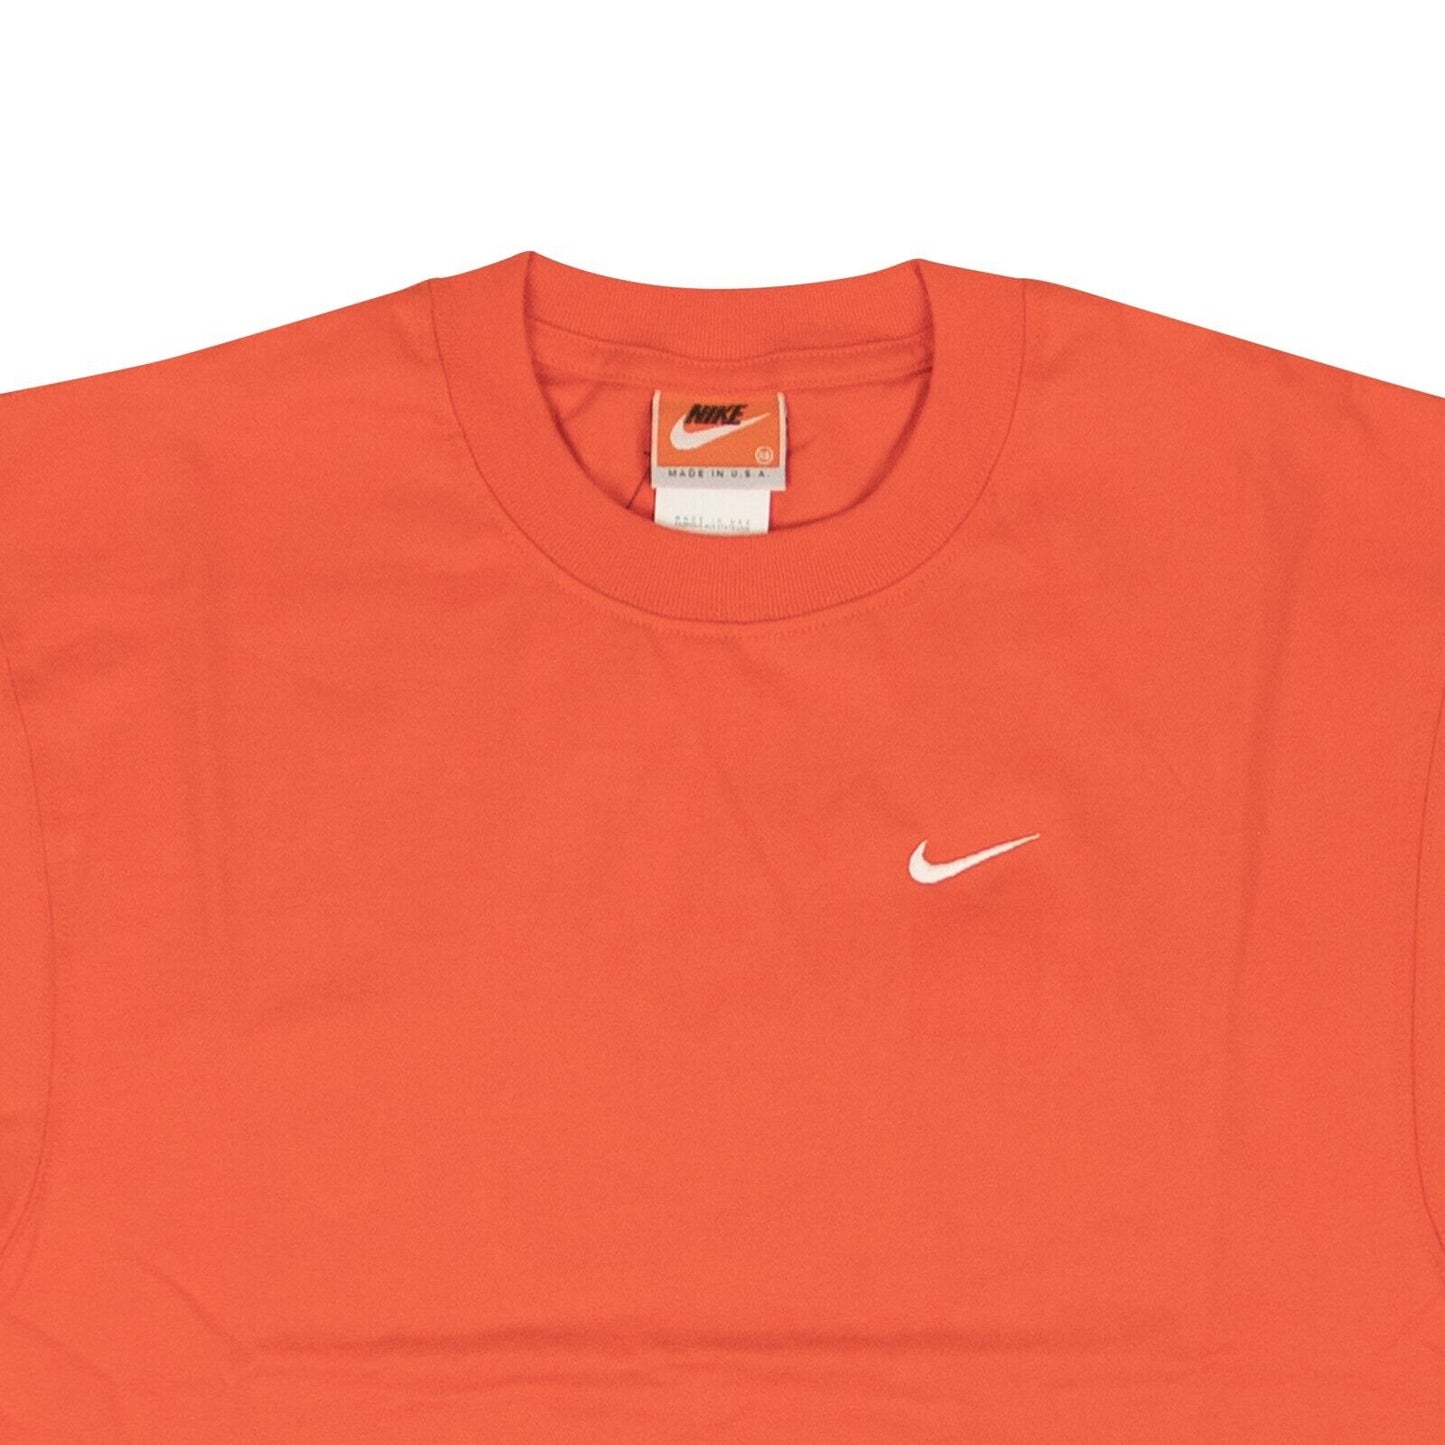 Nike Made In The Usa Tee - Orange